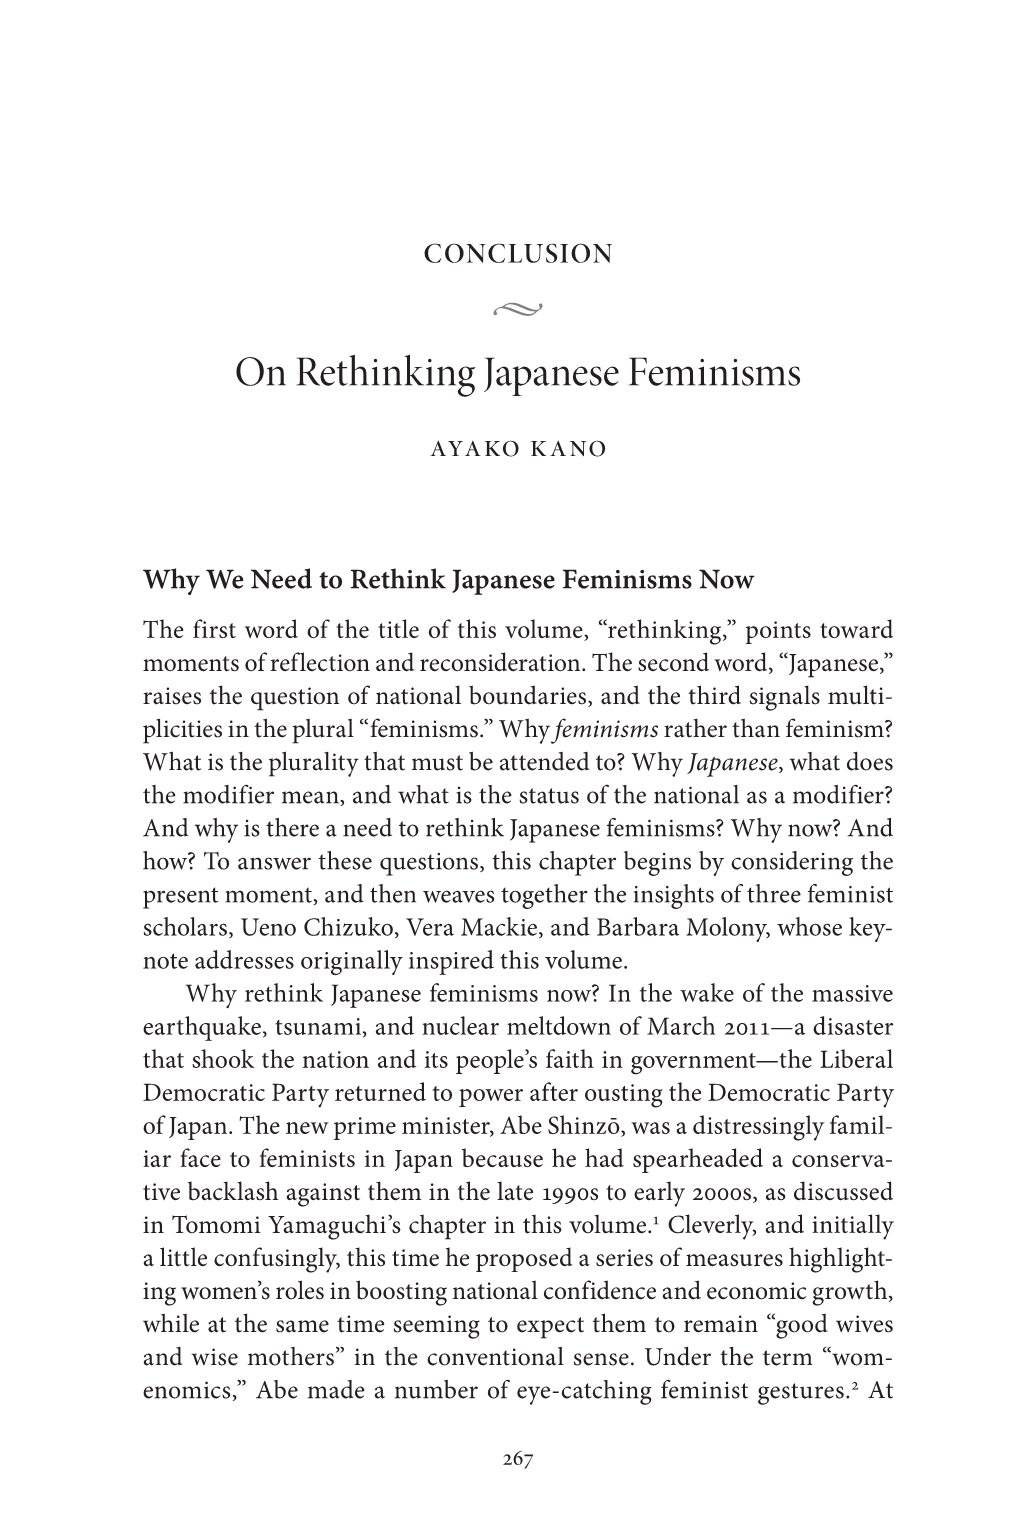 On Rethinking Japanese Feminisms